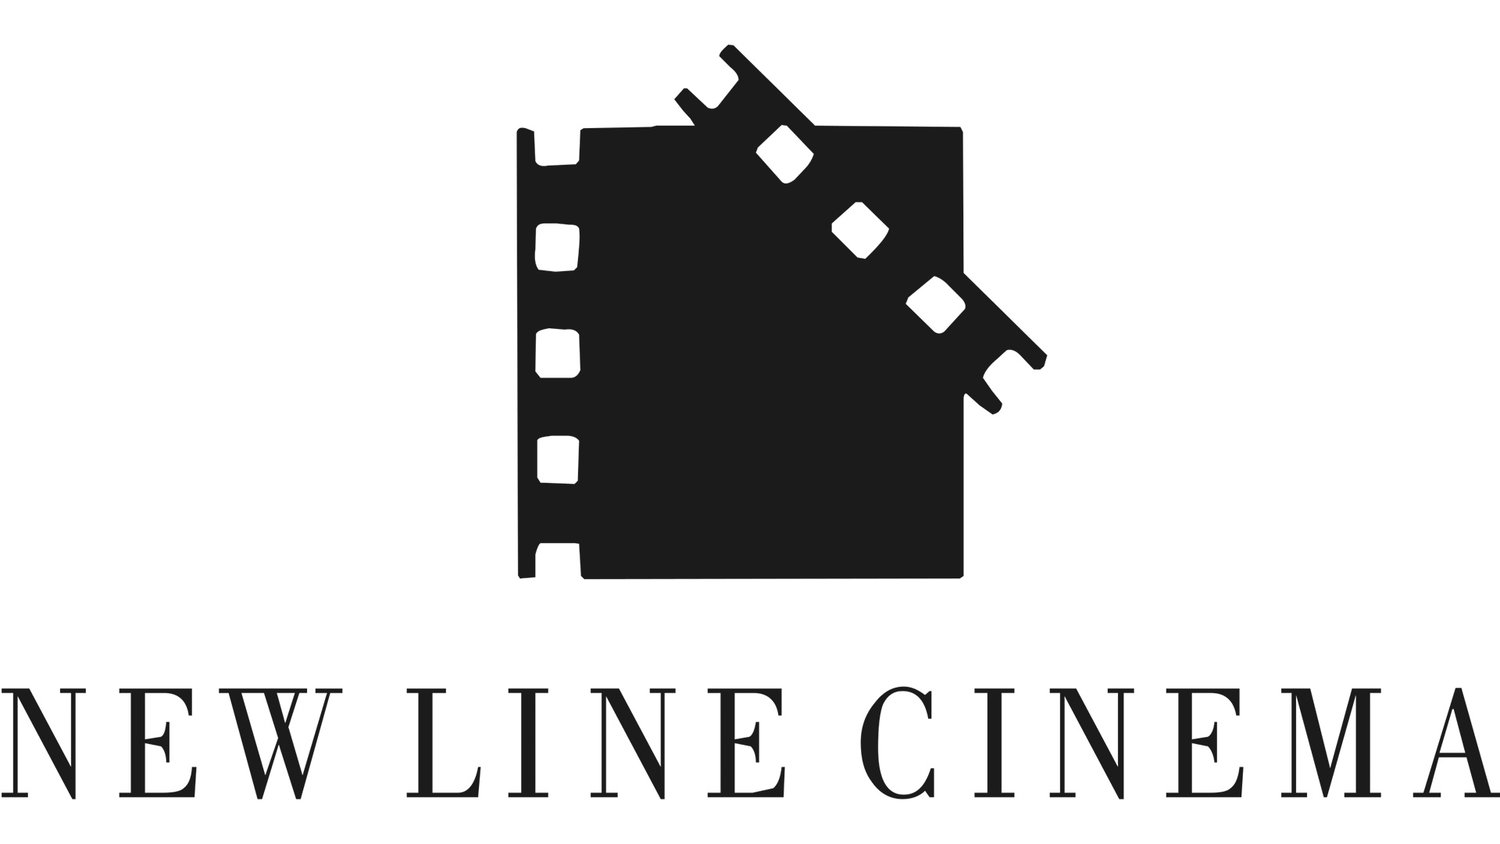 Нью лайн Синема. New line Cinema логотип. Логотипы киностудий. Логотипы известных кинокомпаний. Лайн синема